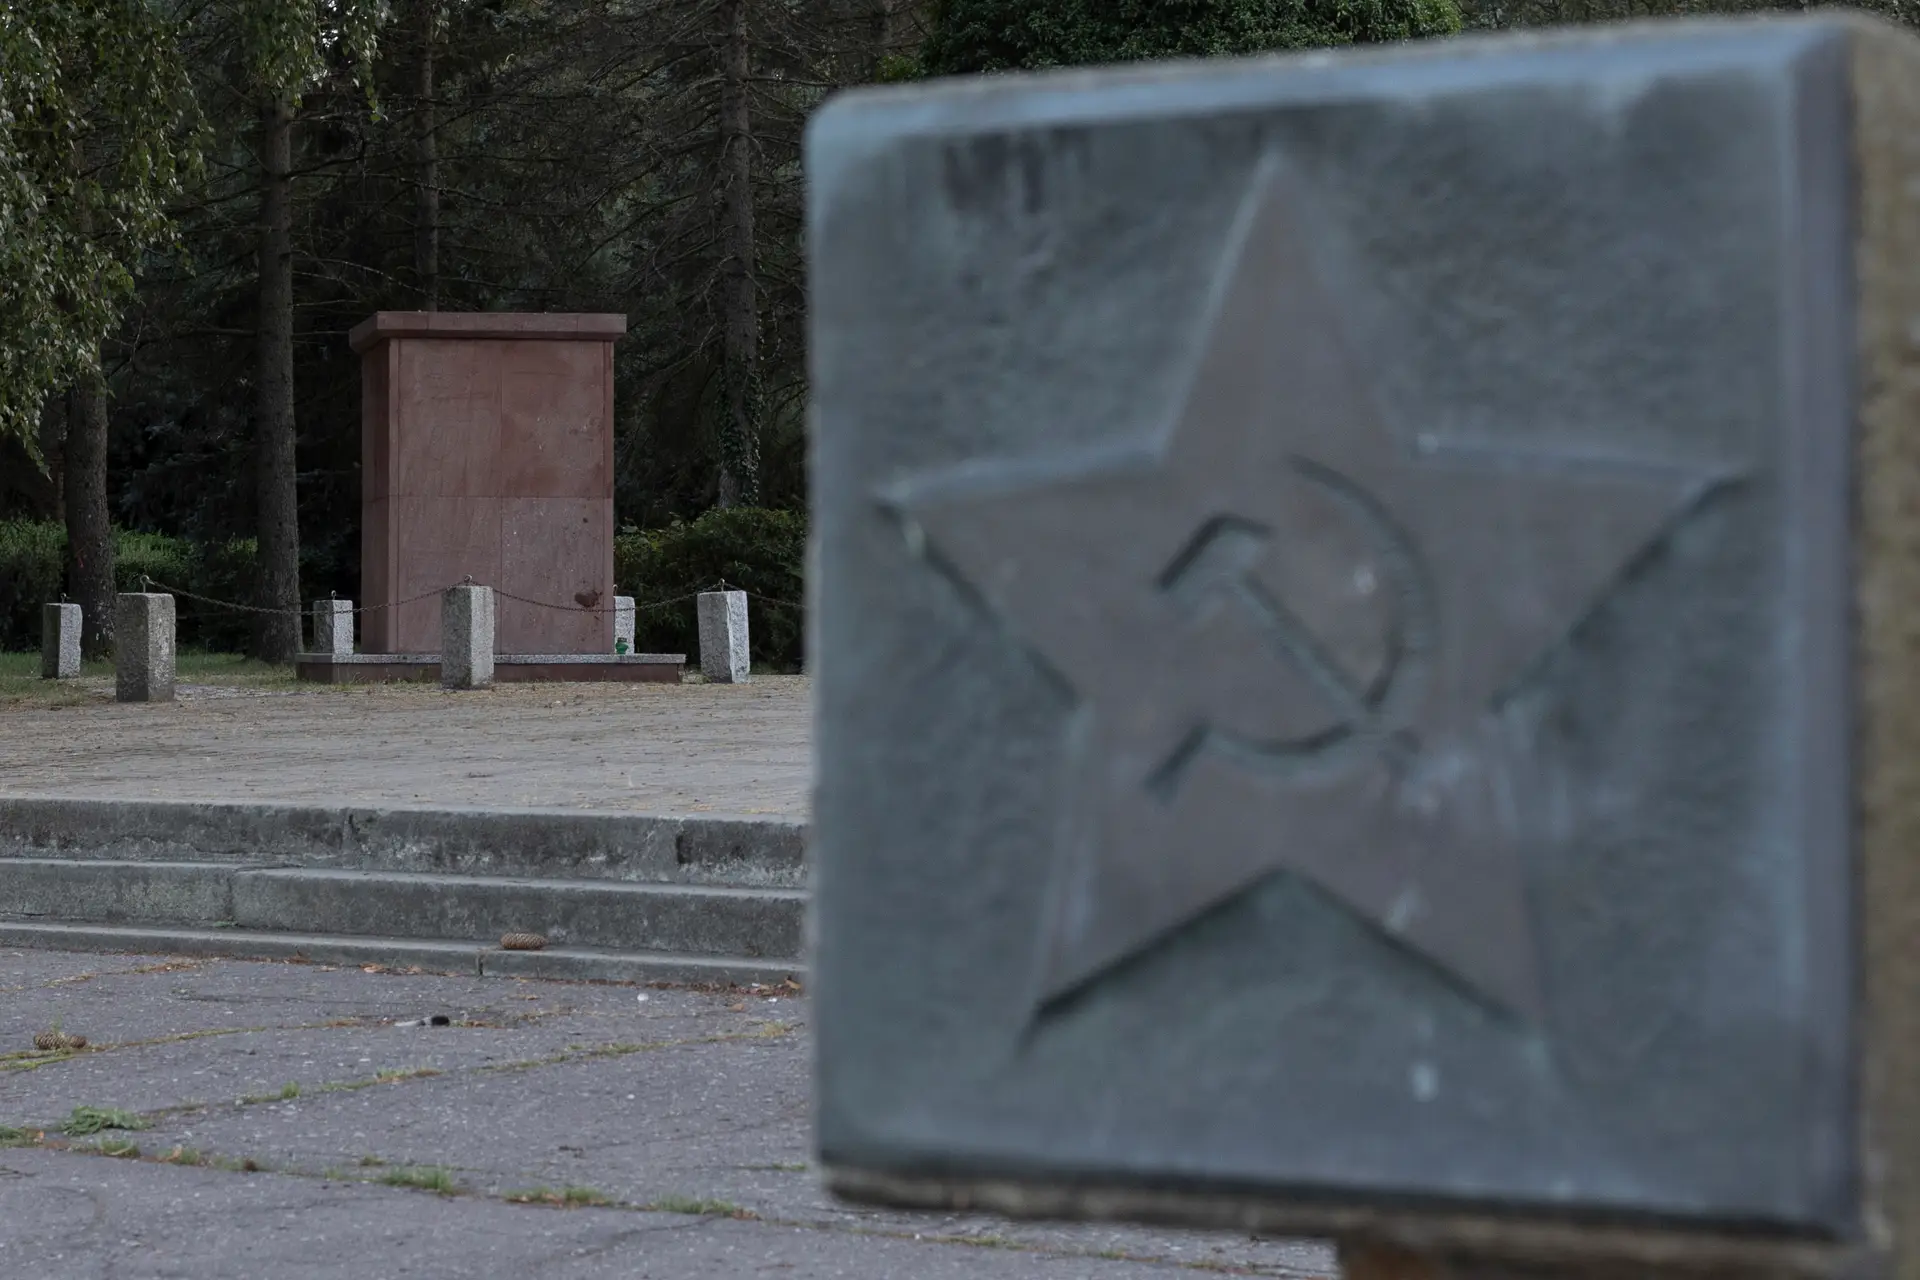 "Mentiras históricas": monumentos soviéticos estão a ser demolidos na Polónia